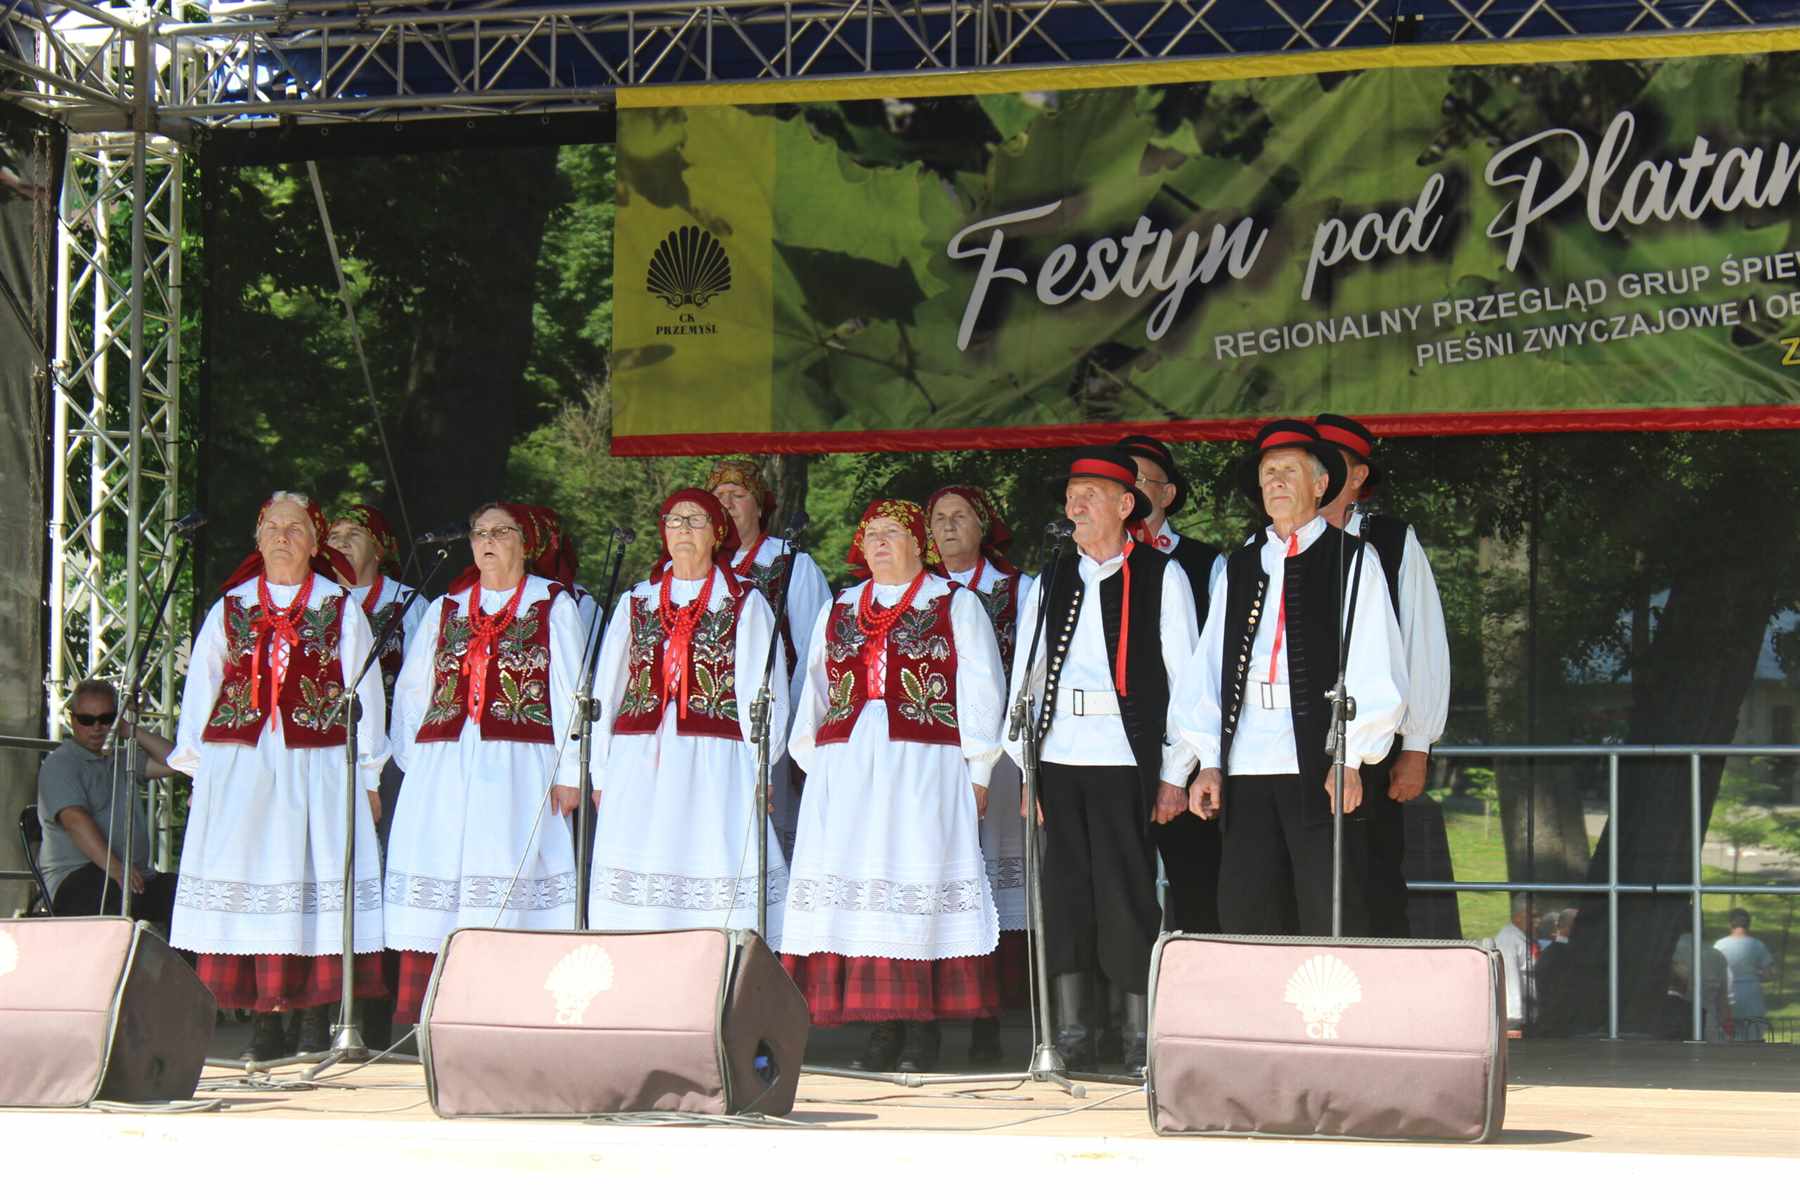 festyn-pod-platanem-xxiii-regionalny-przeglad-grup-spiewaczych